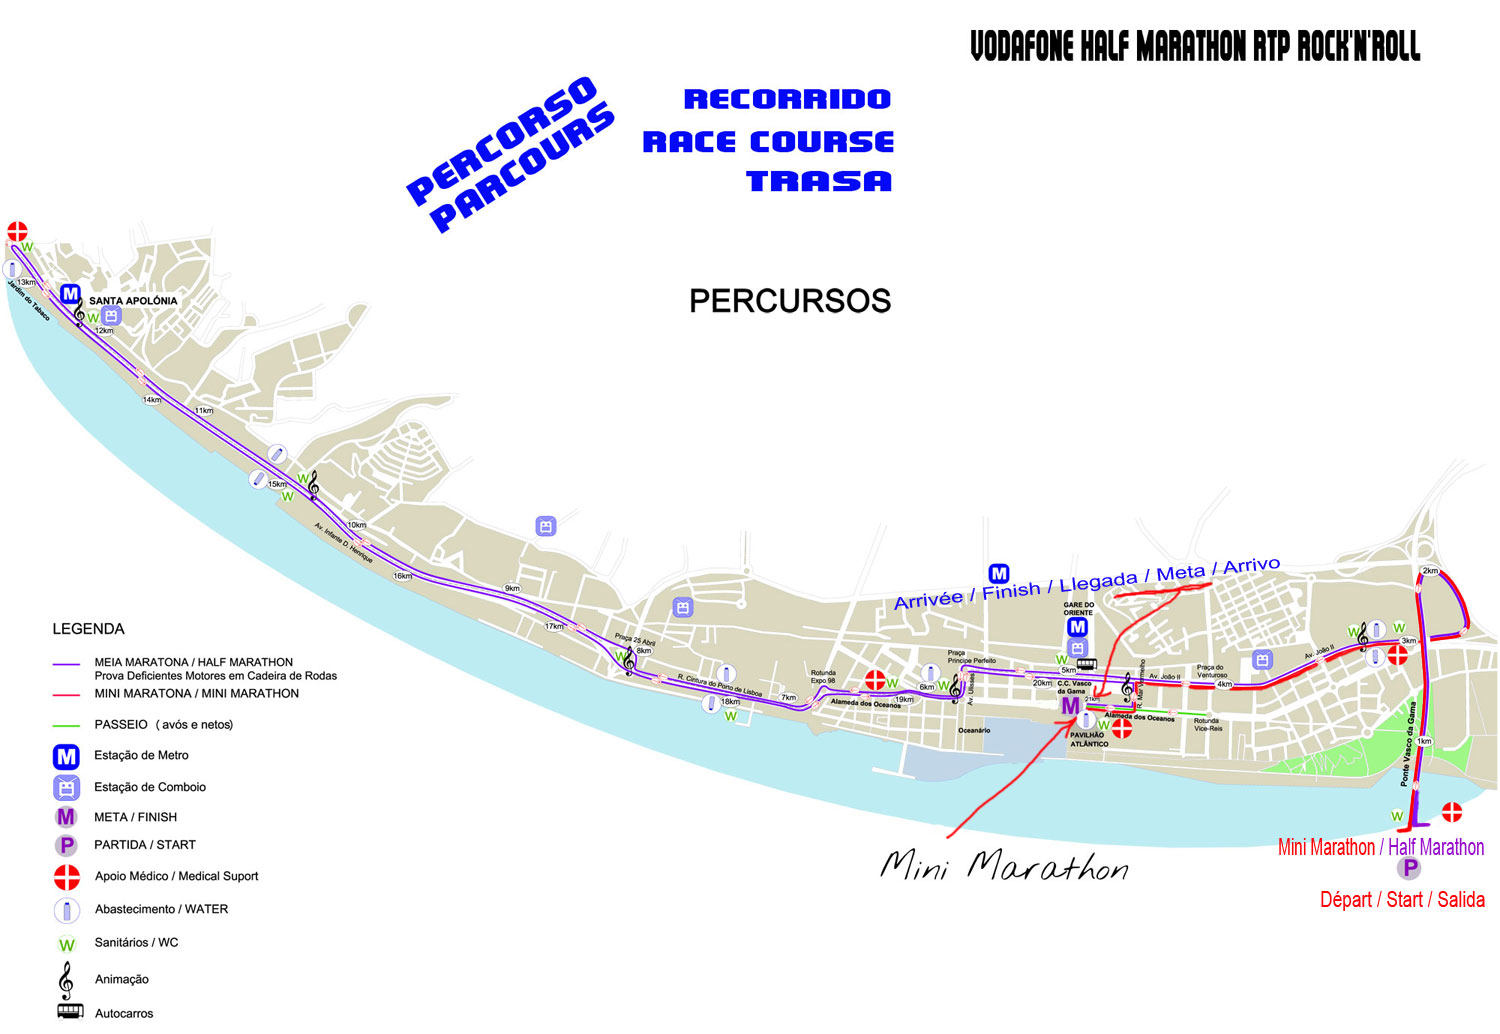 Maratona de Lisboa